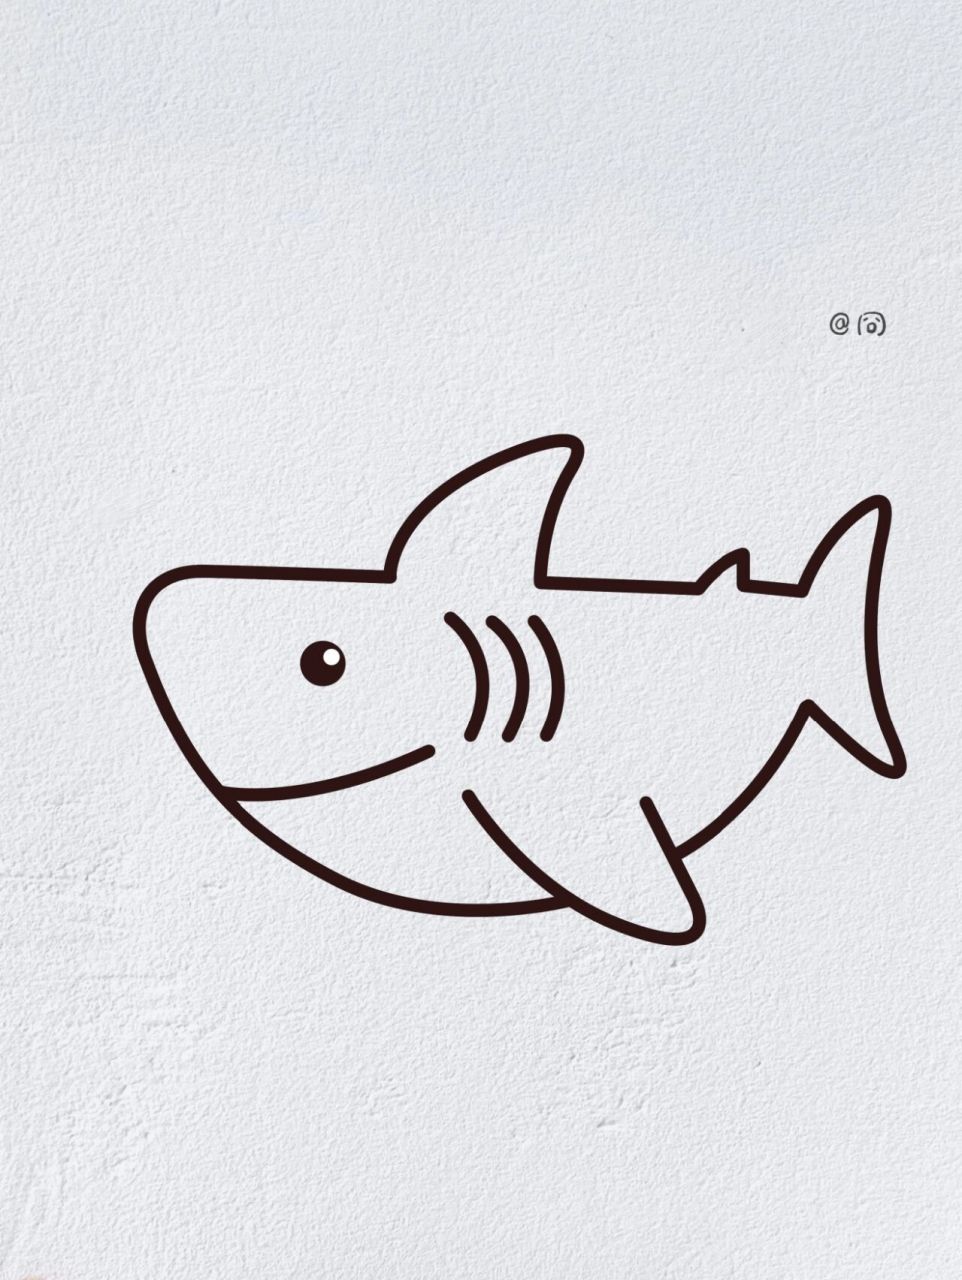 公牛鲨简笔画图片